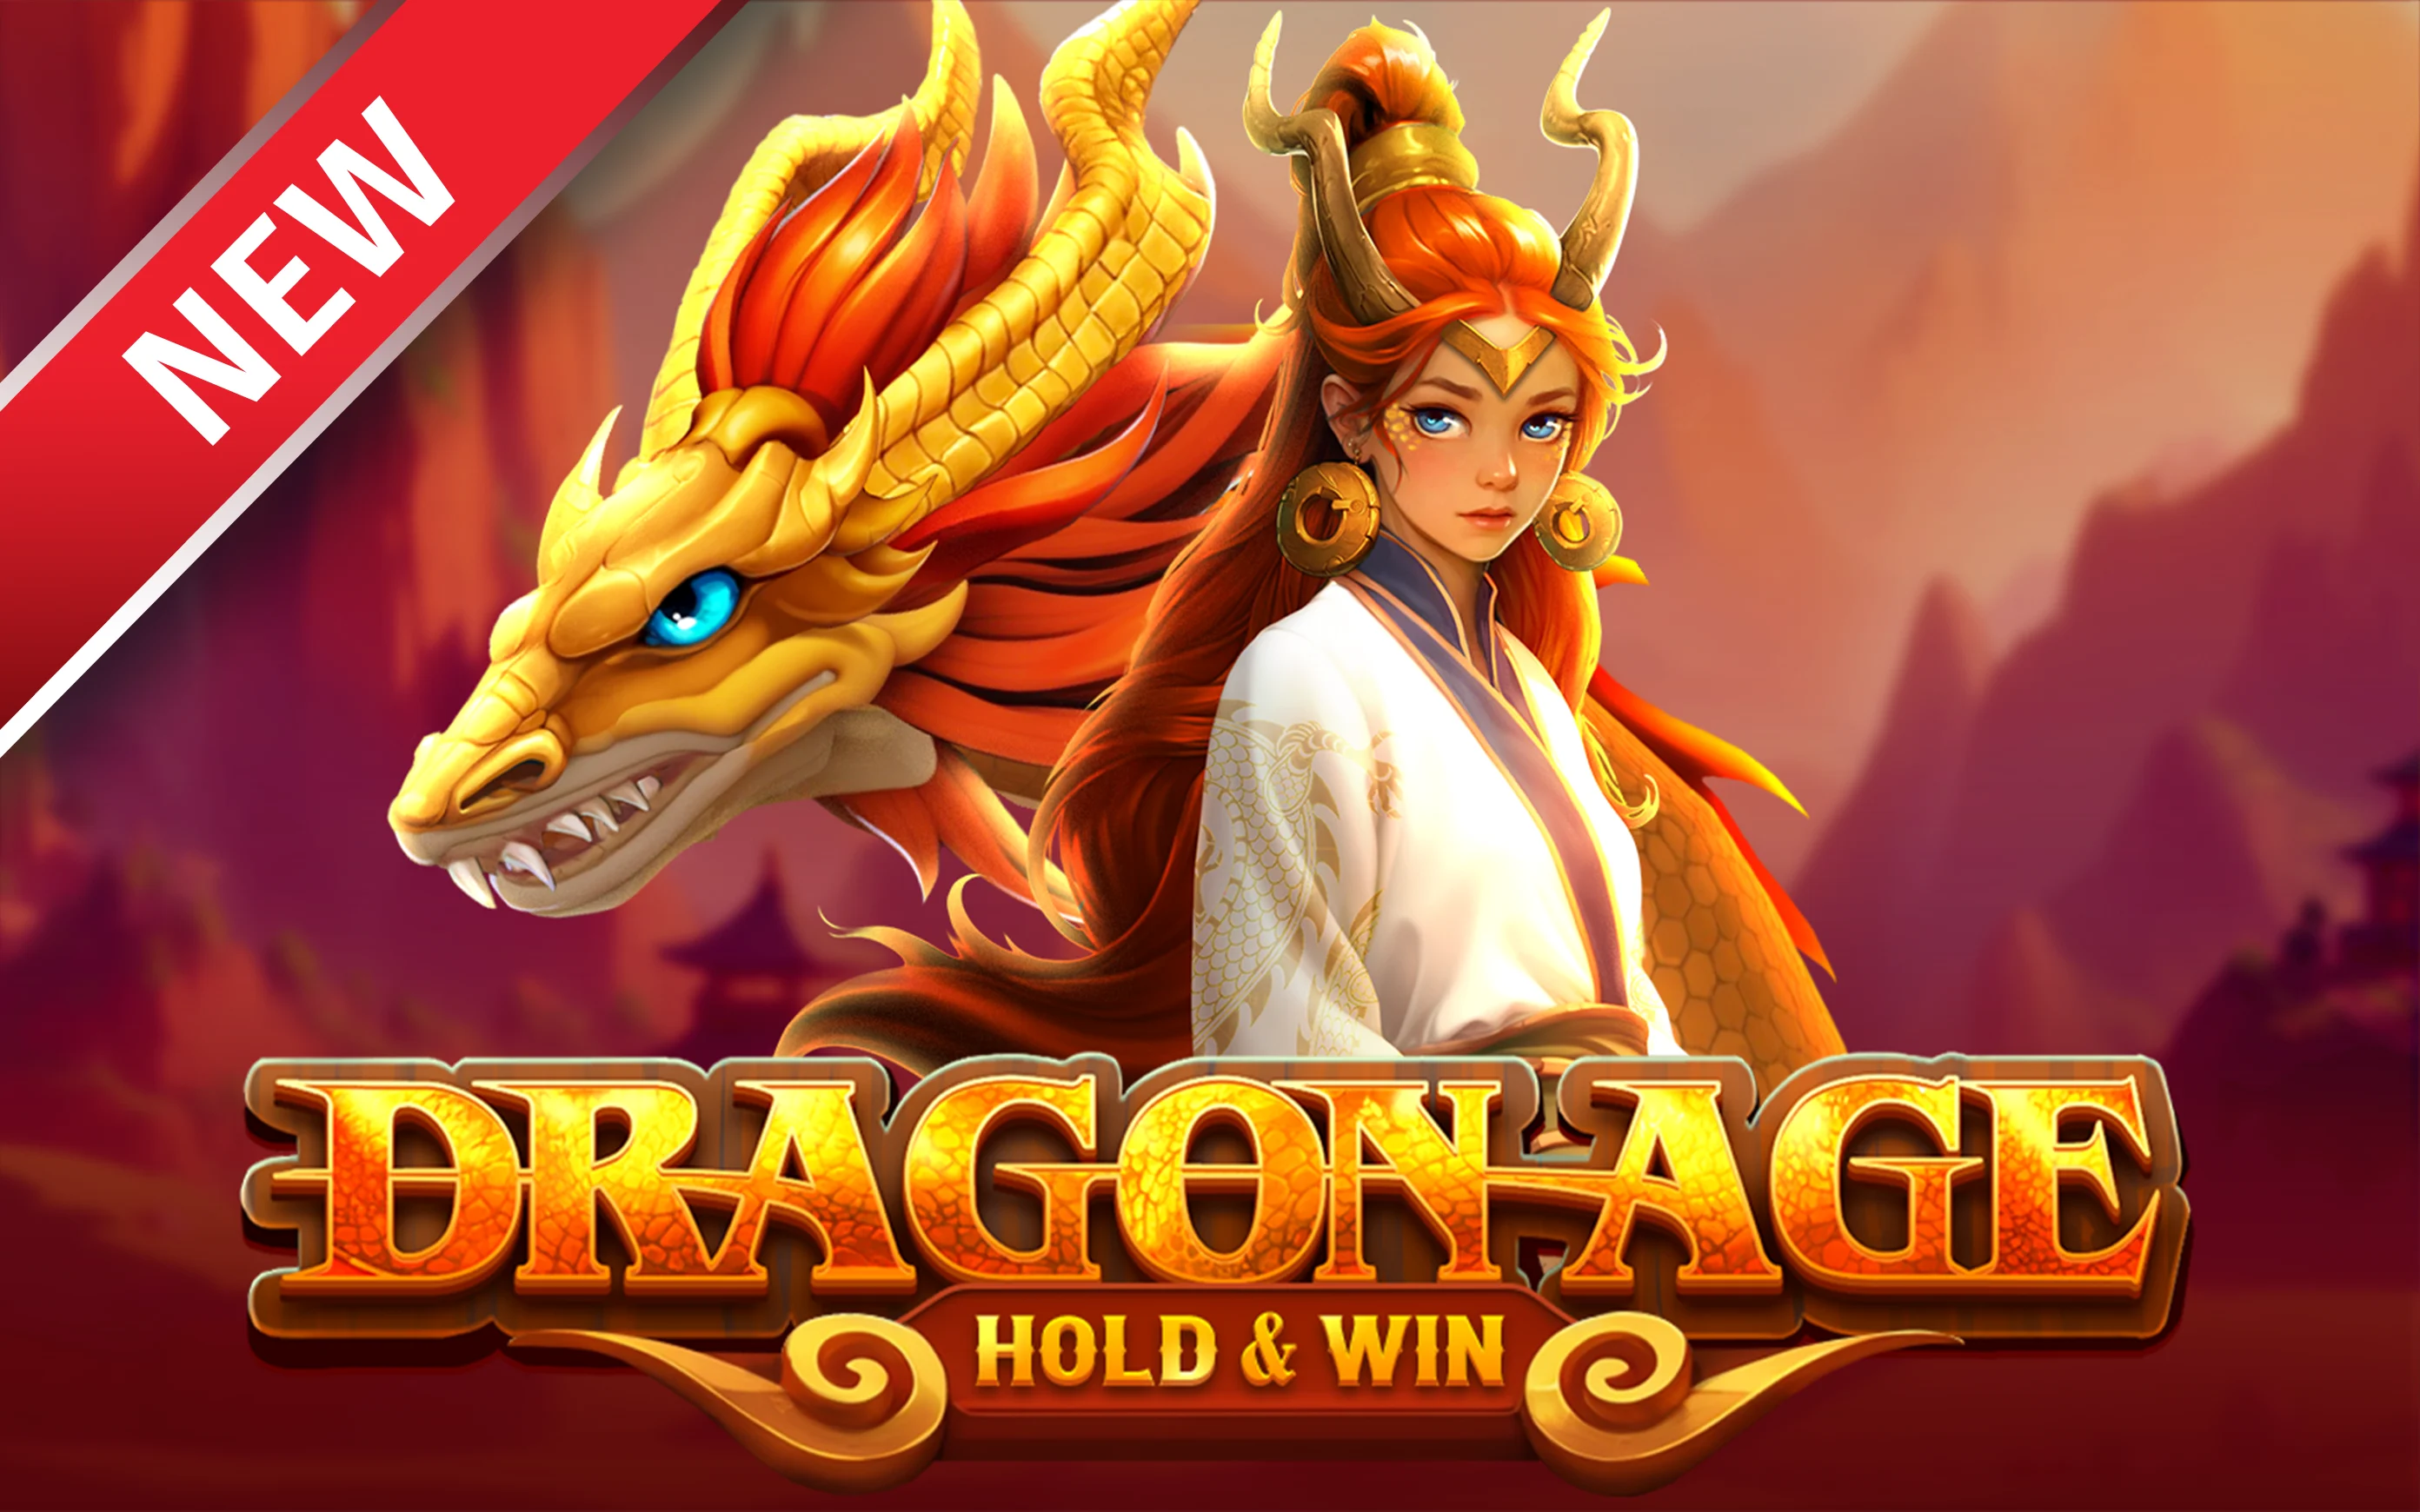 Juega a Dragon Age Hold & Win en el casino en línea de Starcasino.be